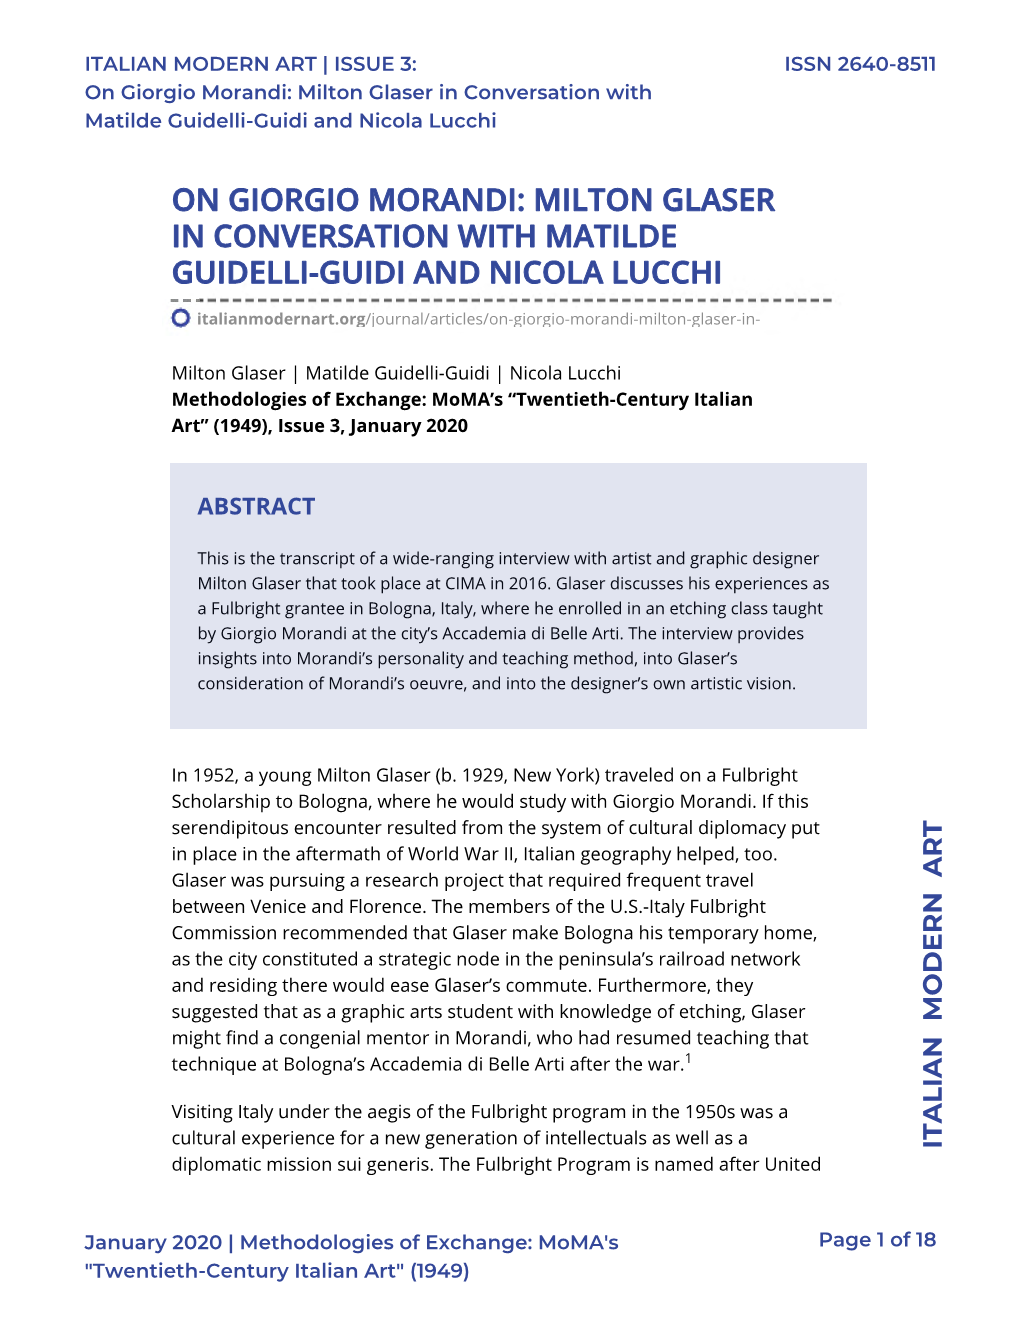 On Giorgio Morandi: Milton Glaser in Conversation with Matilde Guidelli-Guidi and Nicola Lucchi